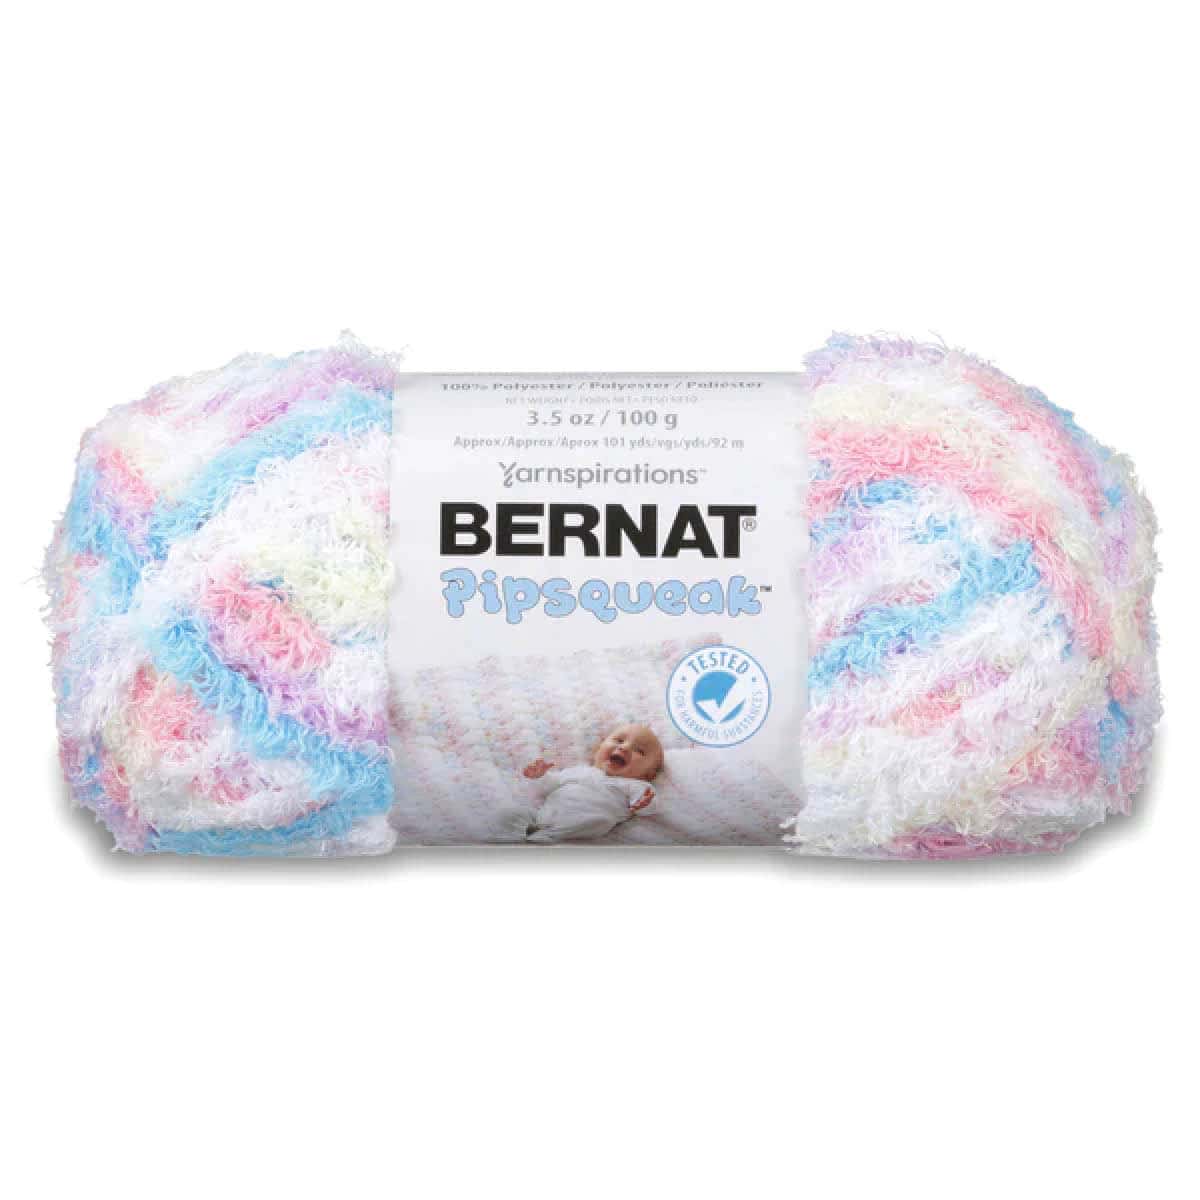 Bernat Pipsqueak Yarn Product